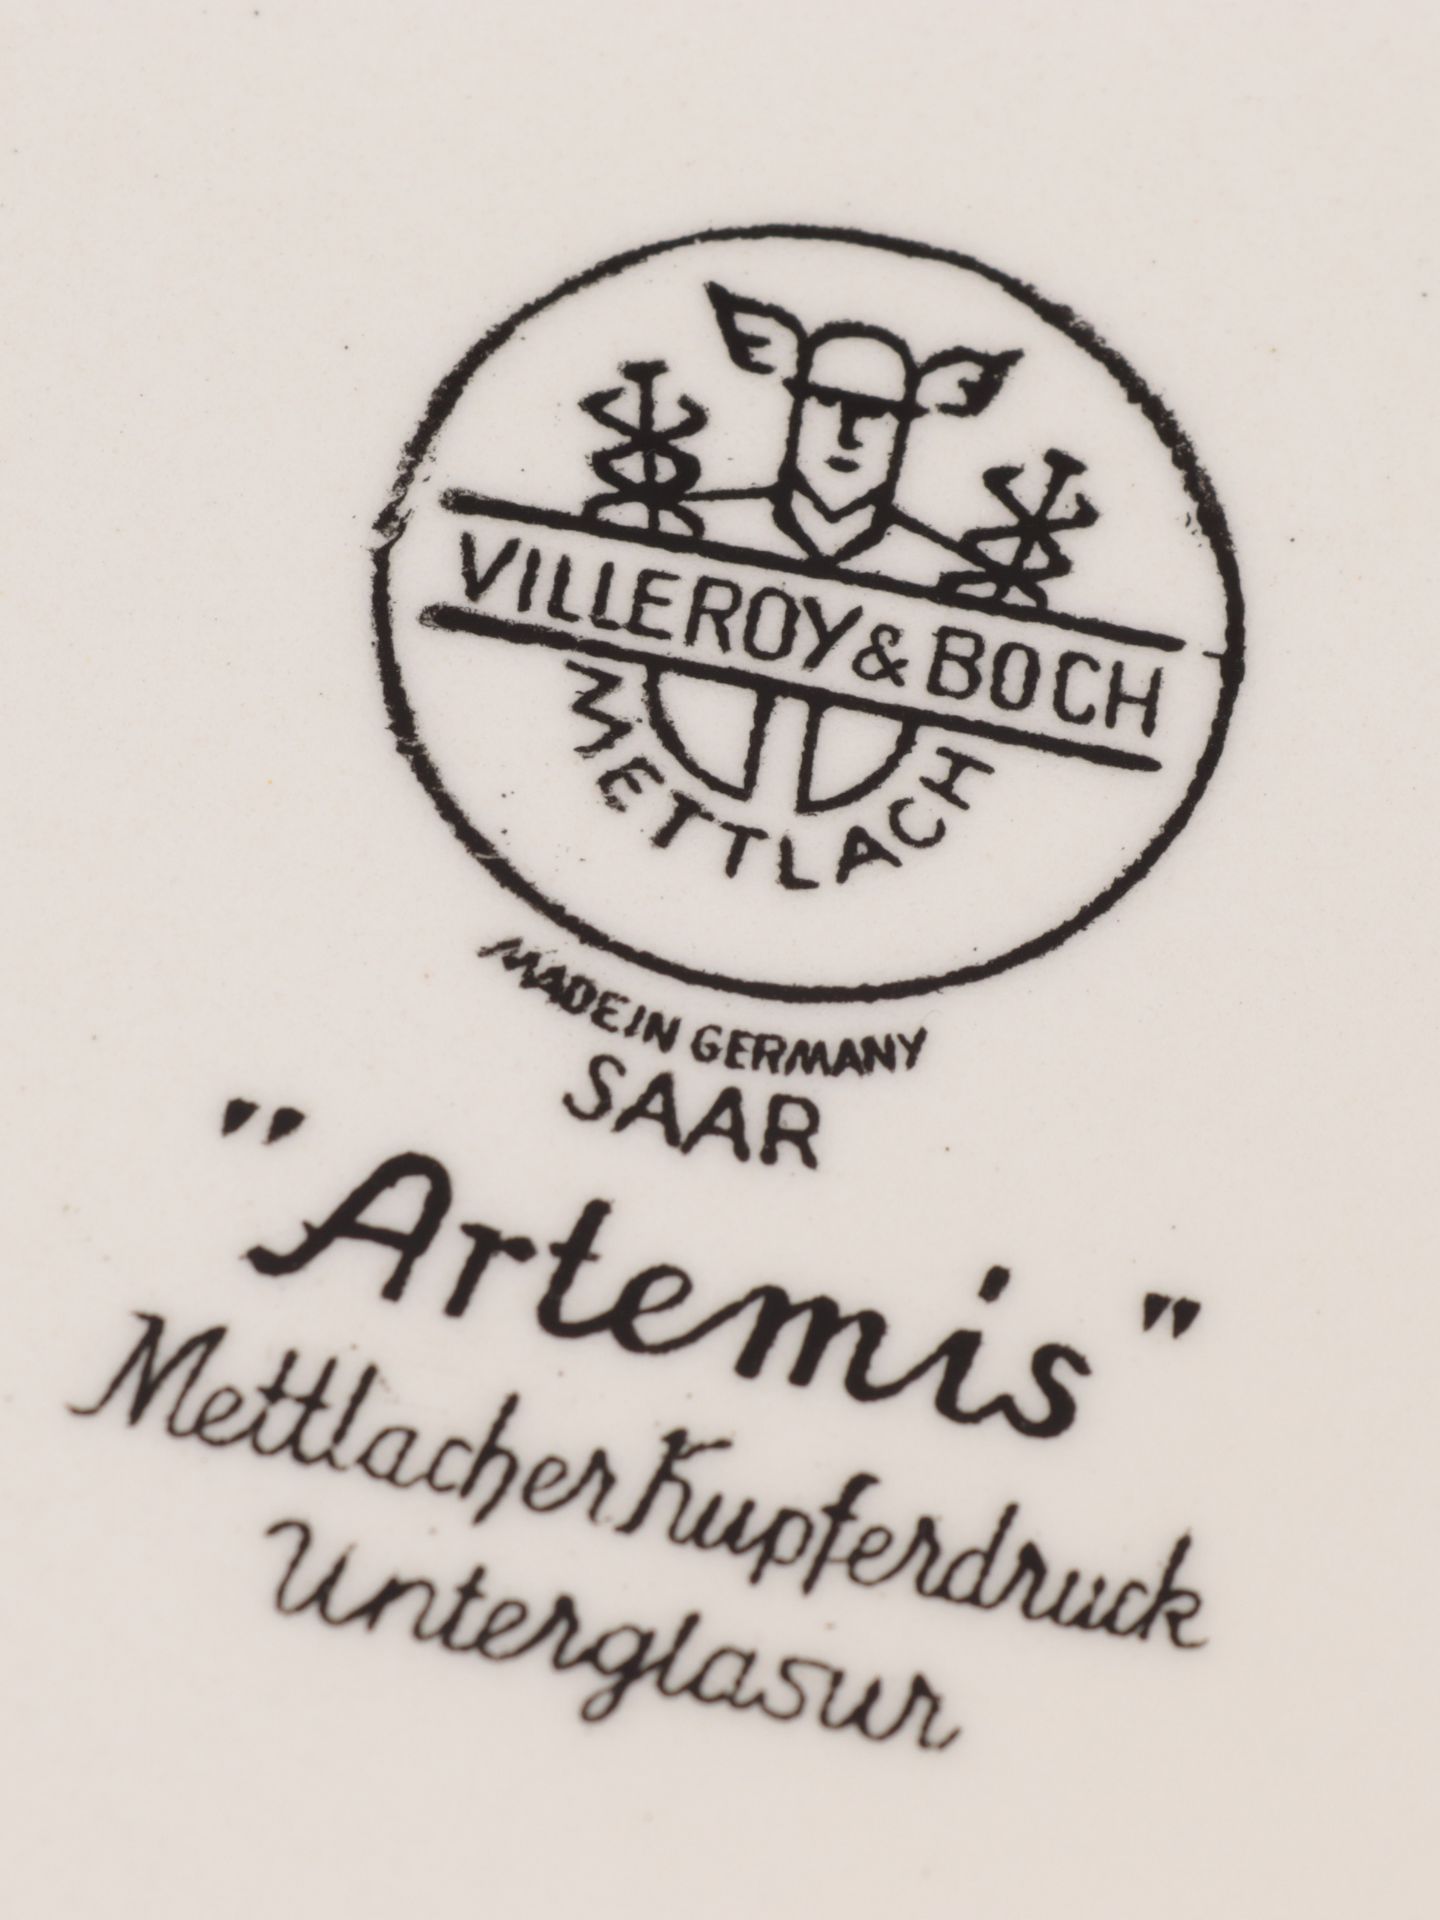 Villeroy & Boch - Konvolut 6 Teile, 4x Mettlach, Saar, "Artemis", Mettlacher Kupferdru - Image 2 of 5